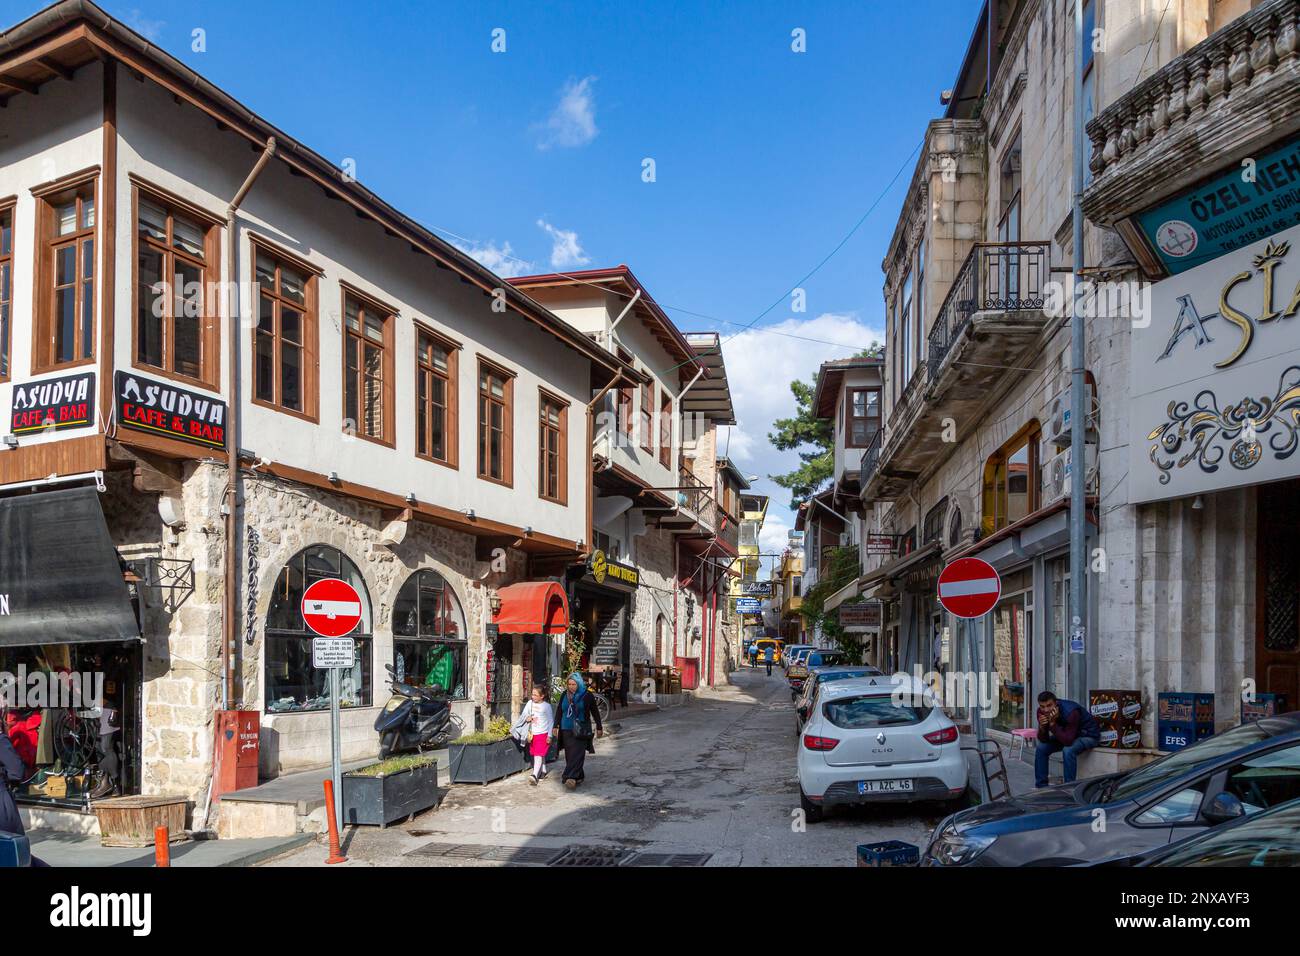 Un bazar avec des maisons historiques et des boutiques dans l'ancienne ville d'Antakya dans la ville de Hatay en Turquie avant le grand tremblement de terre. Banque D'Images